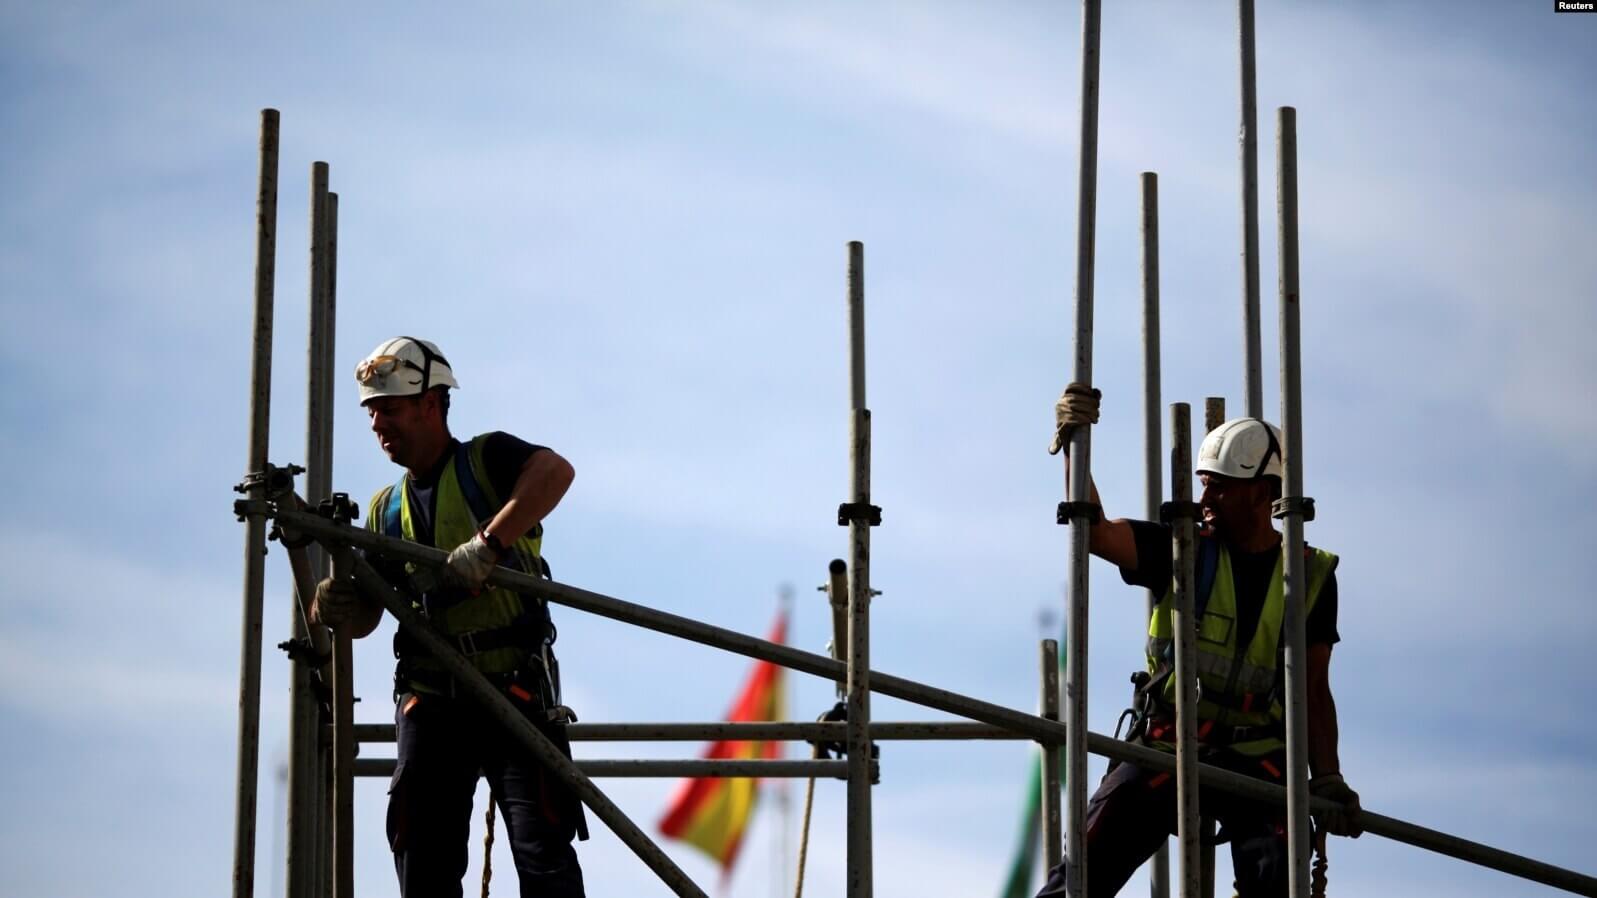 Trabajadores construyen una estructura de tubería en un andamio durante el Día Mundial de la Seguridad y la Salud en el Trabajo en la capital andaluza de Sevilla, sur de España, el 28 de abril de 2016. REUTERS/Marcelo del Pozo/Foto de archivo